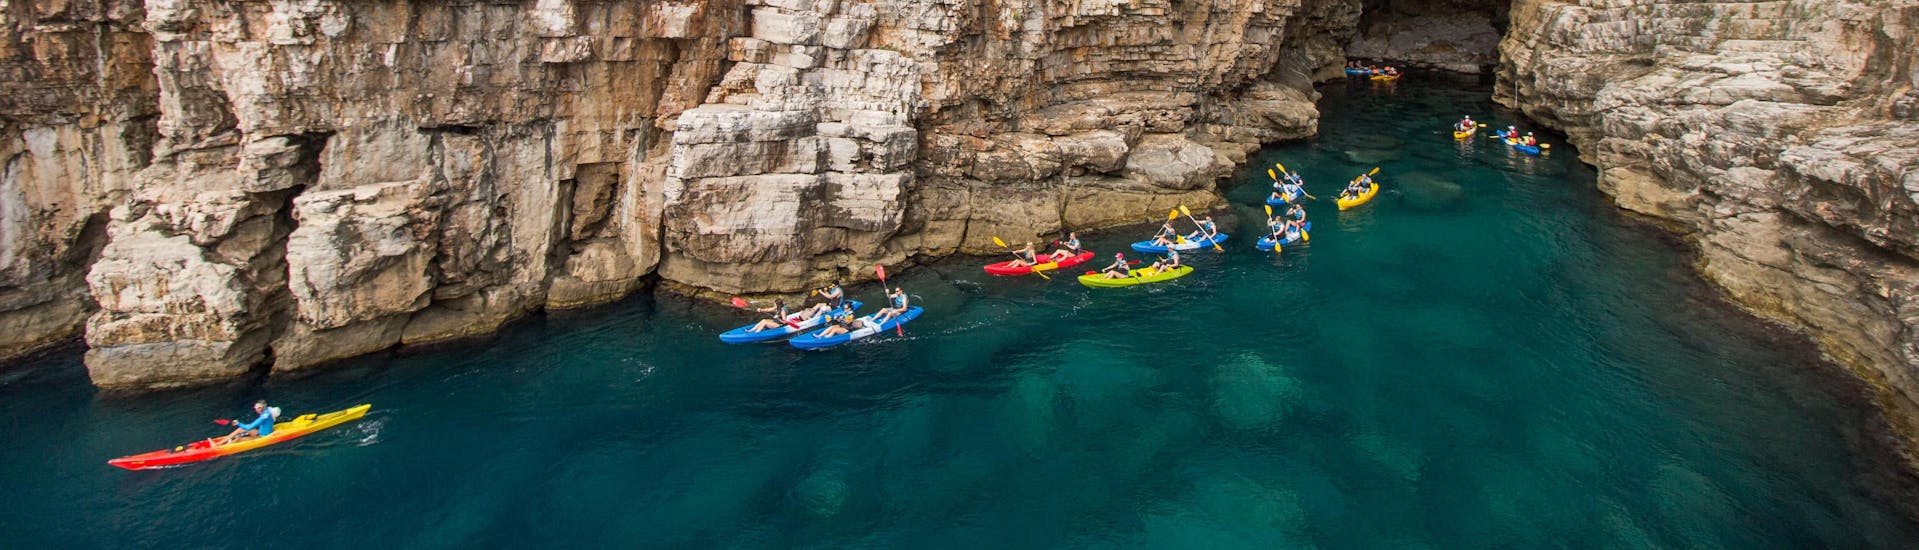 Dubrovnik: Een stel vrienden geniet van hun tocht in een van de hotspots voor kajakken en kanoën.